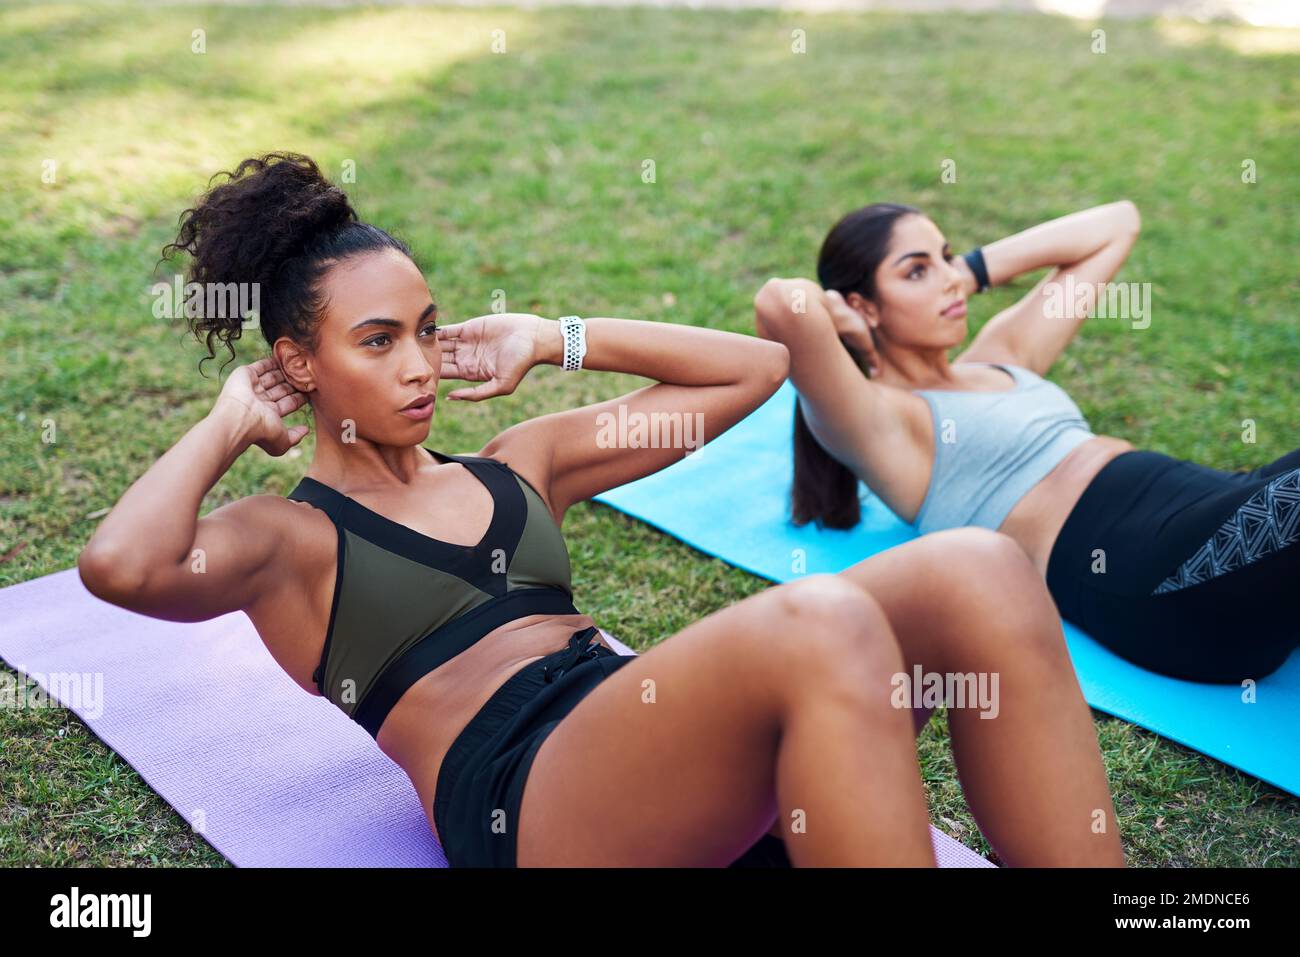 Nessun dolore, nessun guadagno. due giovani donne attraenti che eseguono esercizi di base l'una accanto all'altra nel parco durante il giorno. Foto Stock